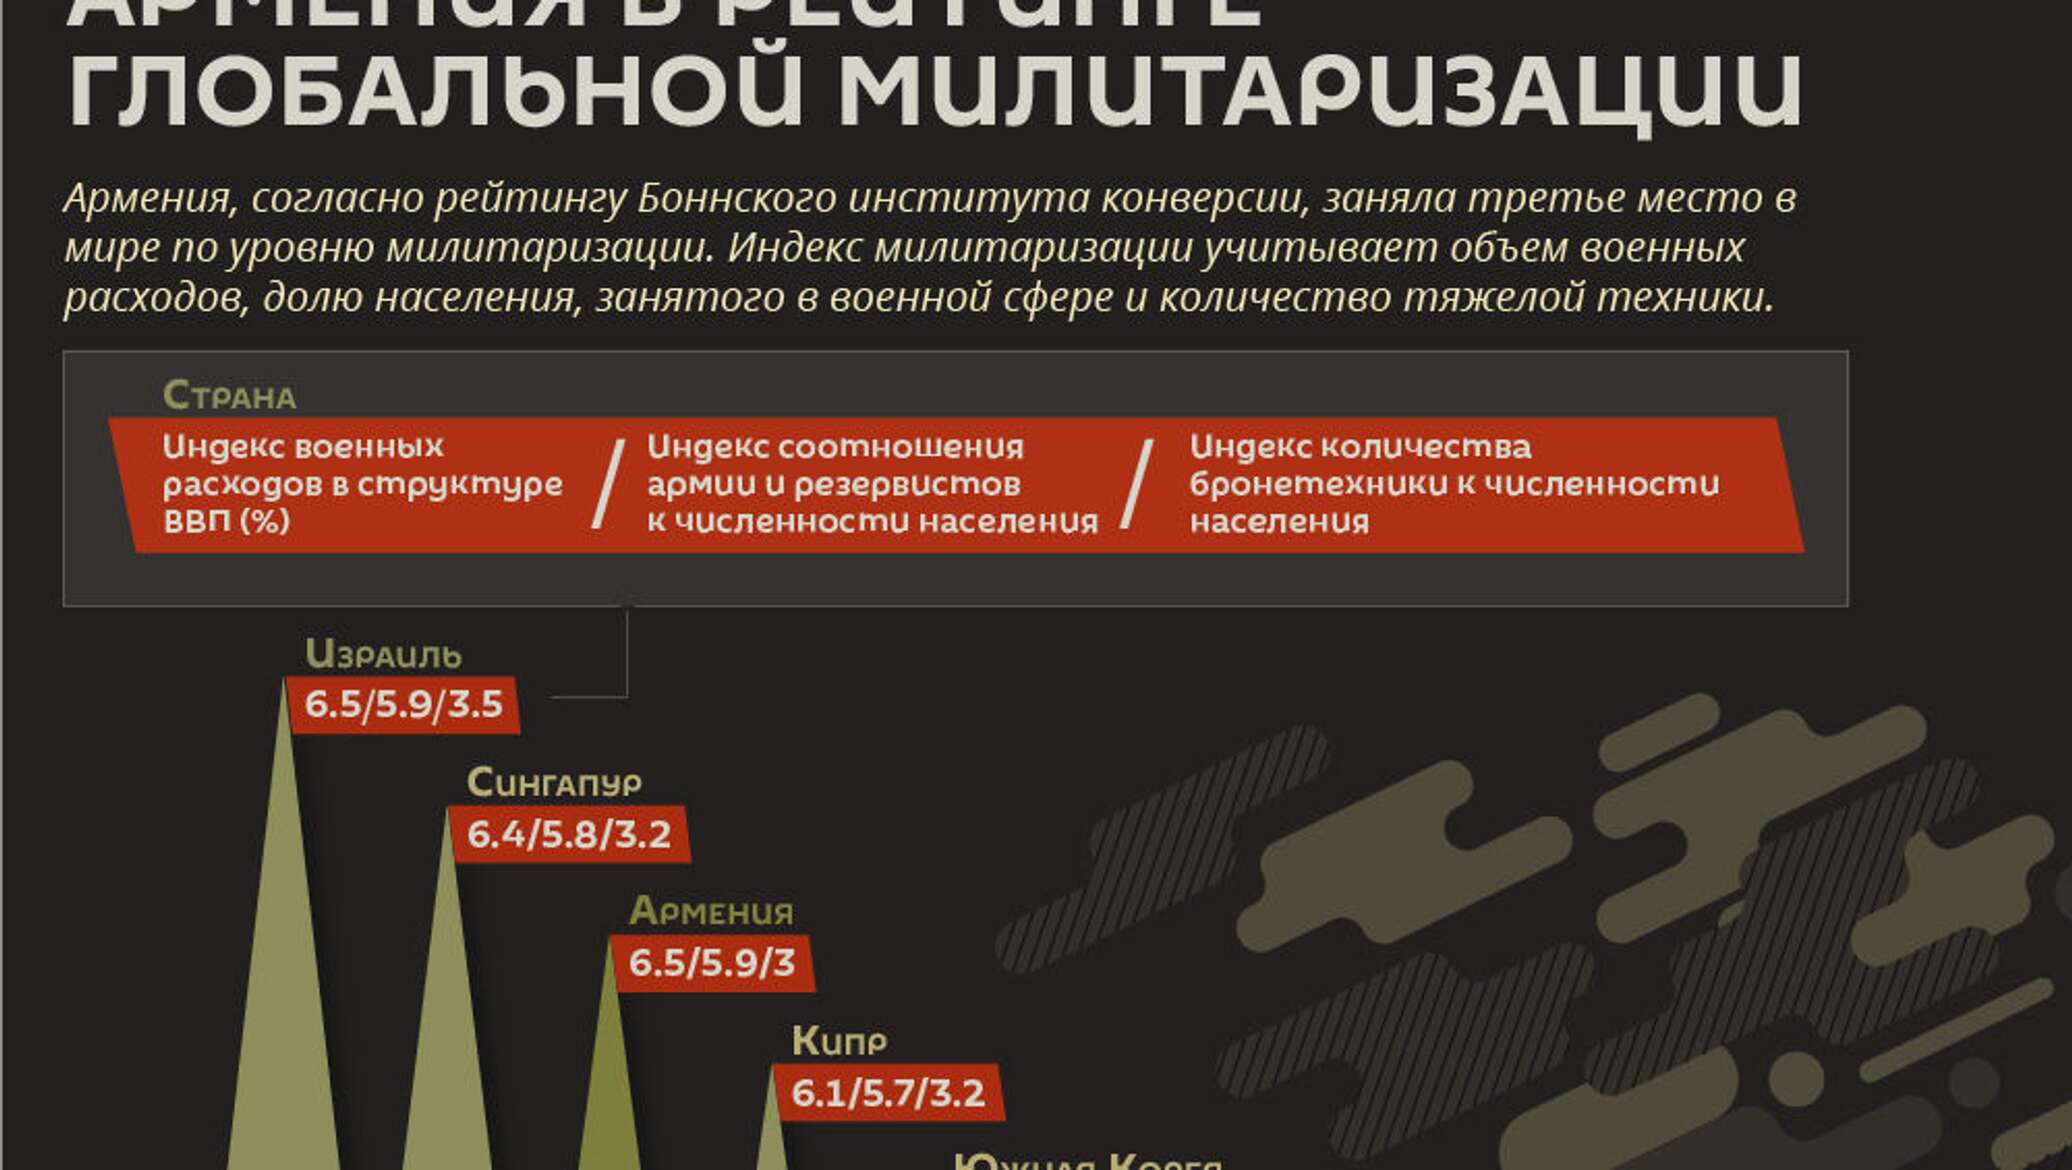 Милитаризация страны. Армения инфографика. Экономика Армении инфографика. Военная безопасность инфографика 2020. Дугин тотальная милитаризация